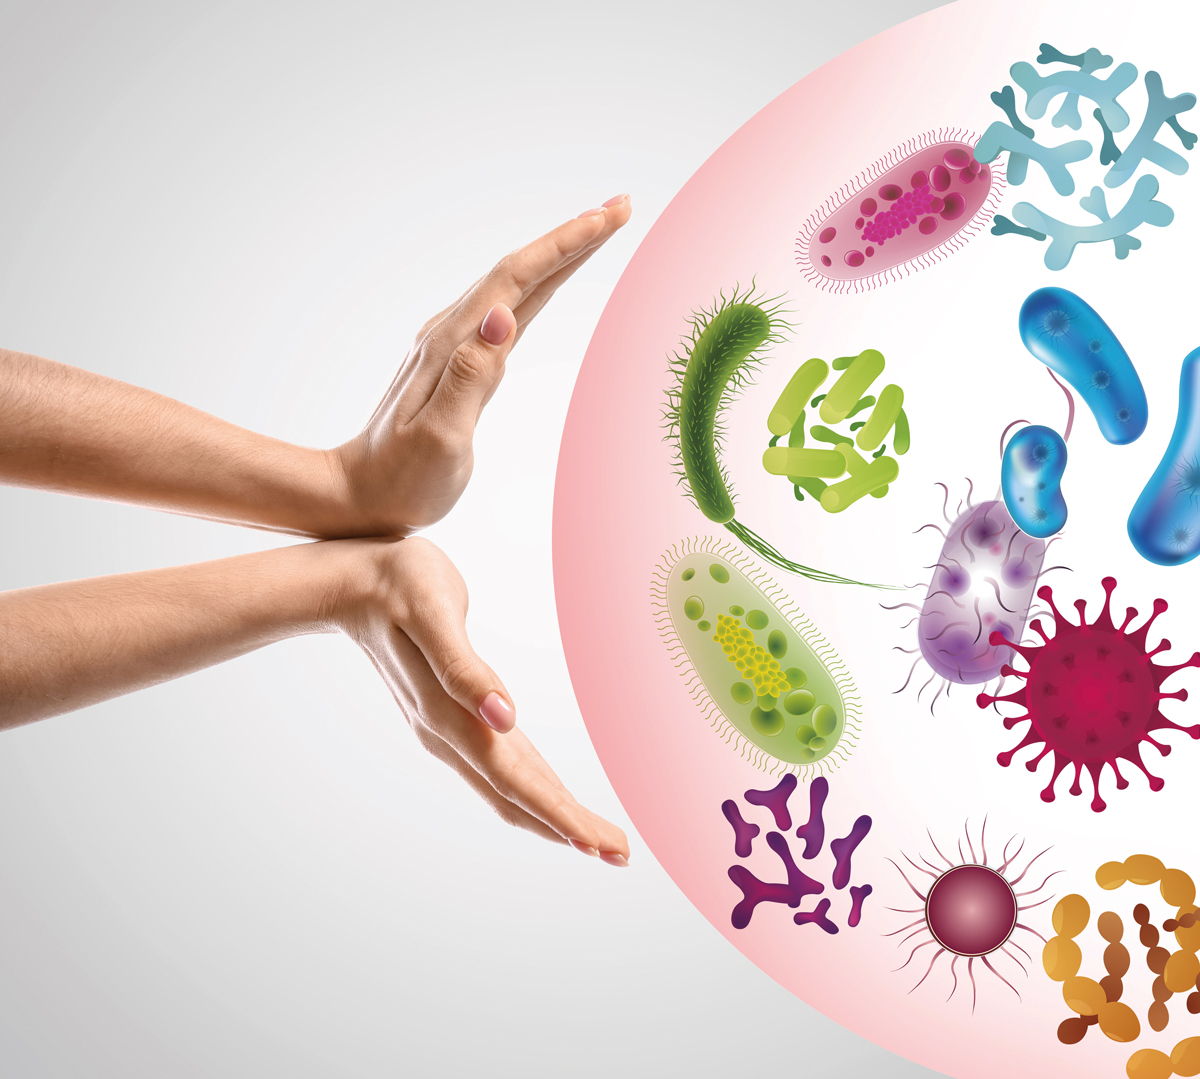 Hände halten Infektionen - Bakterien und Keime - auf